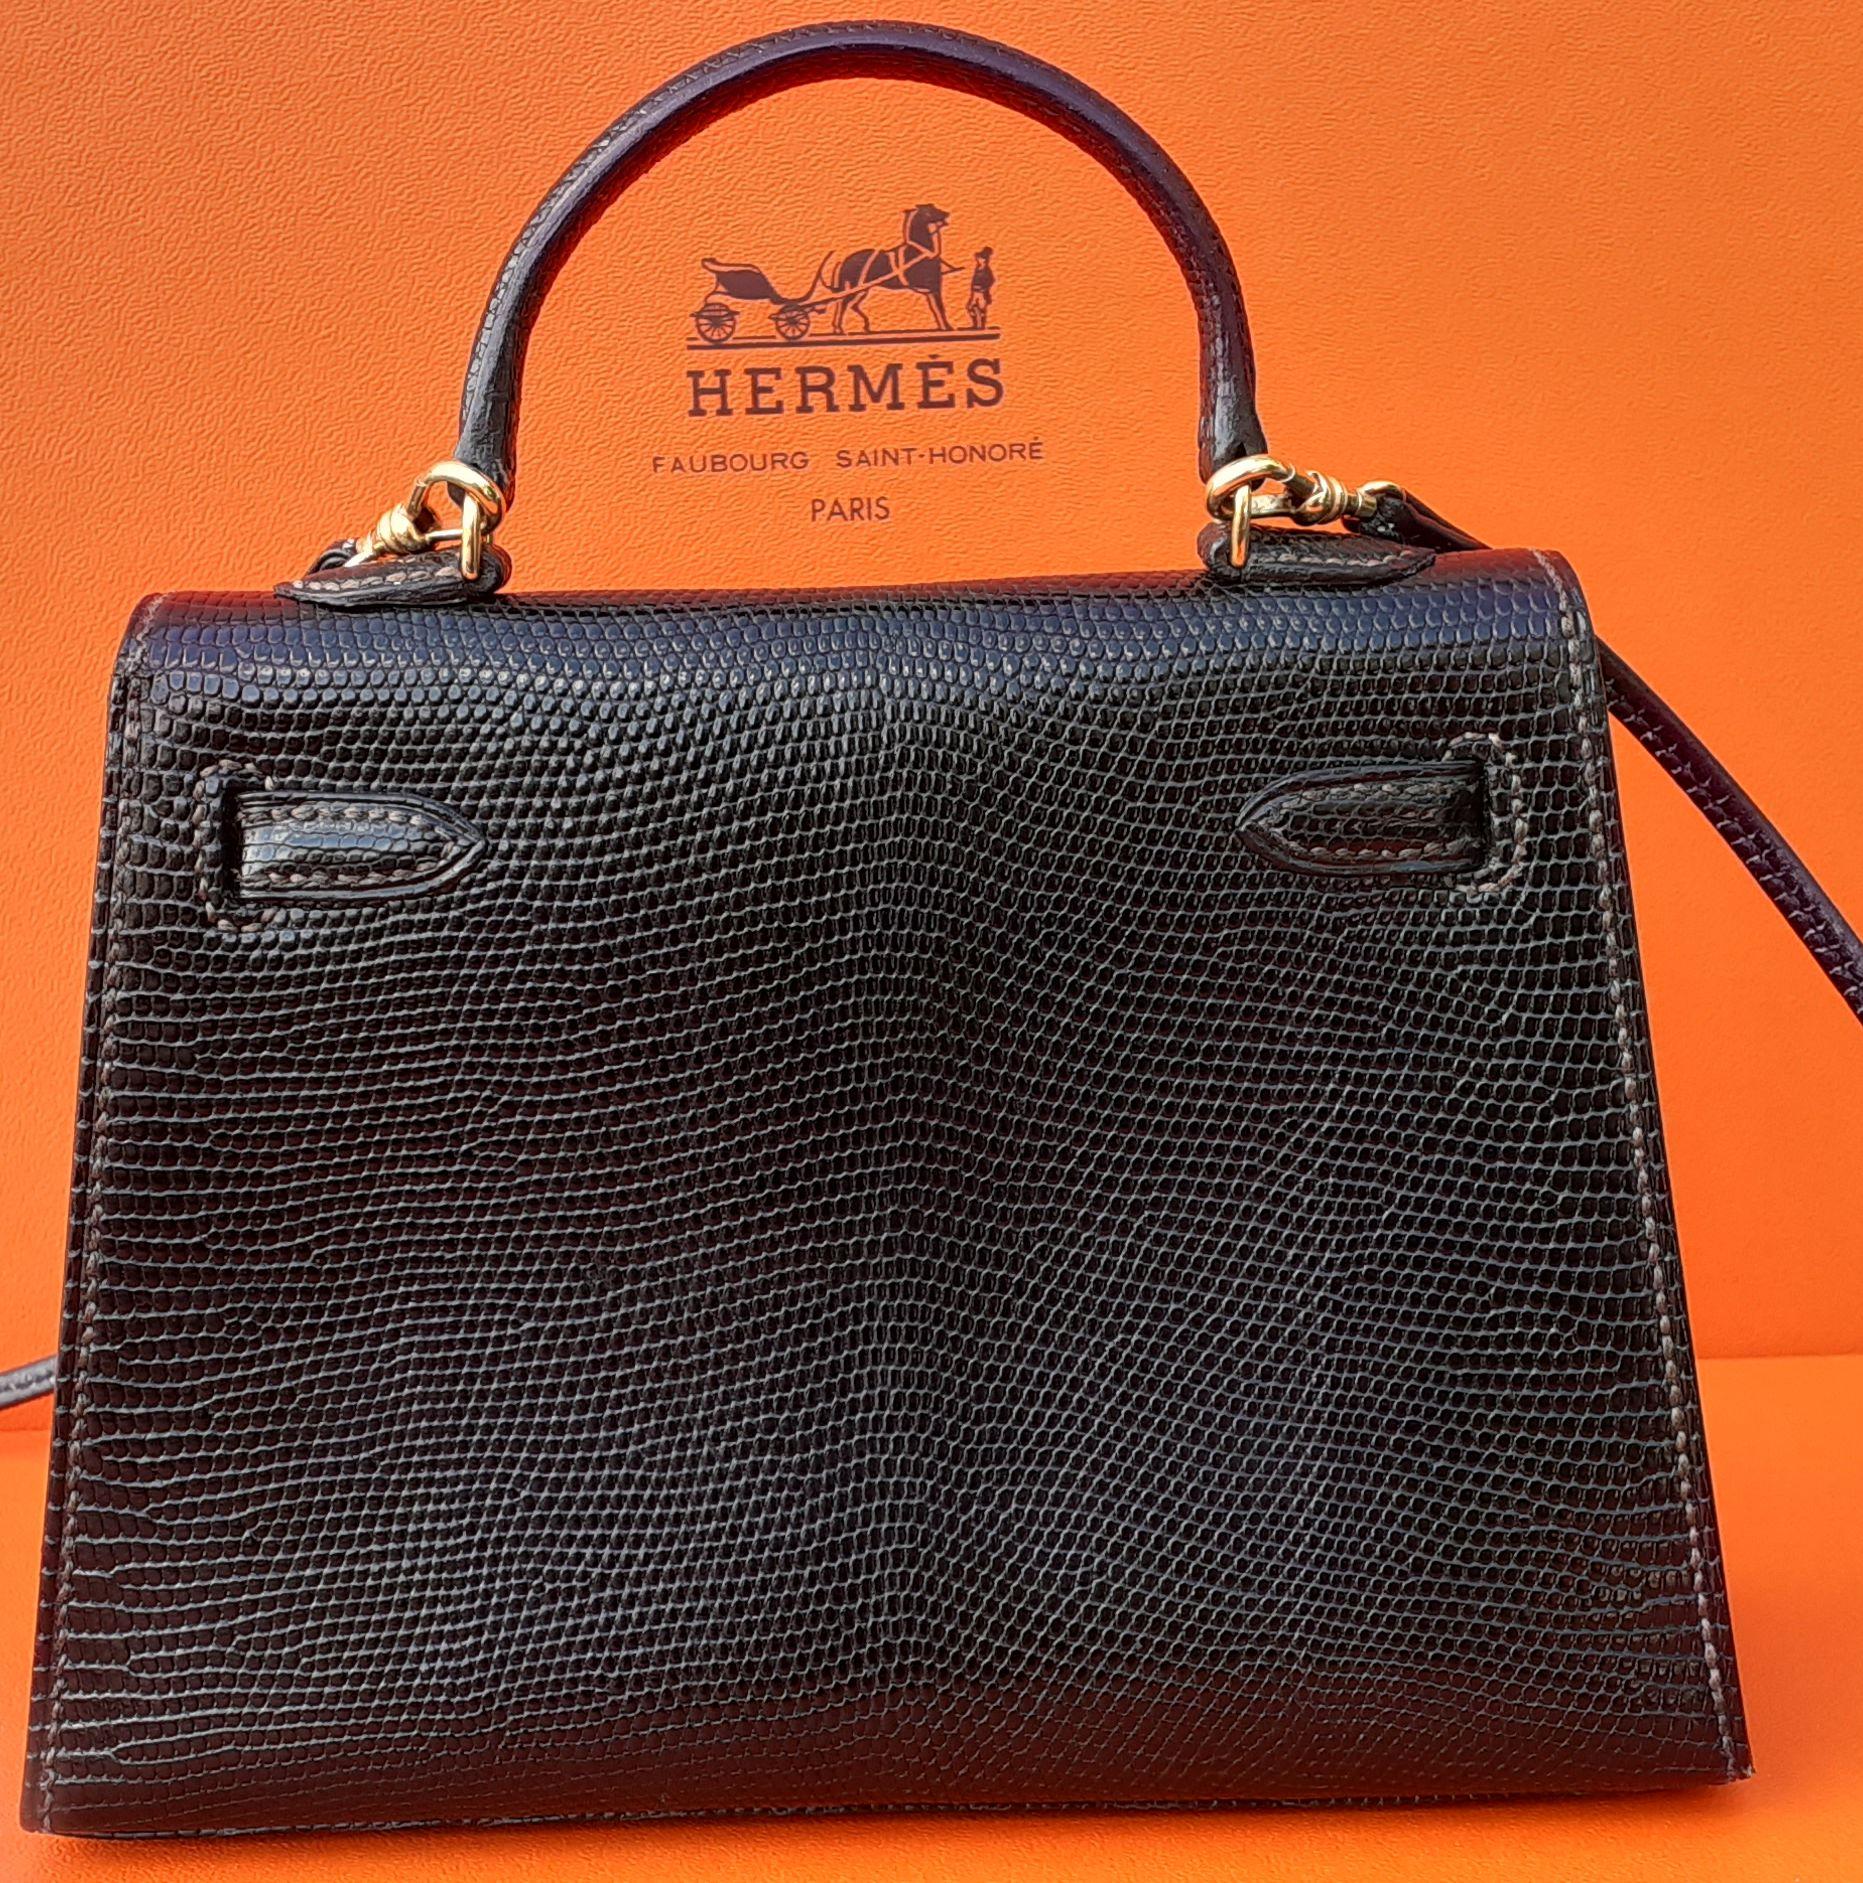 Außergewöhnliche Seltenheit Hermès Mini Micro Kelly Bag Lizard Gold Hw 15 cm Damen